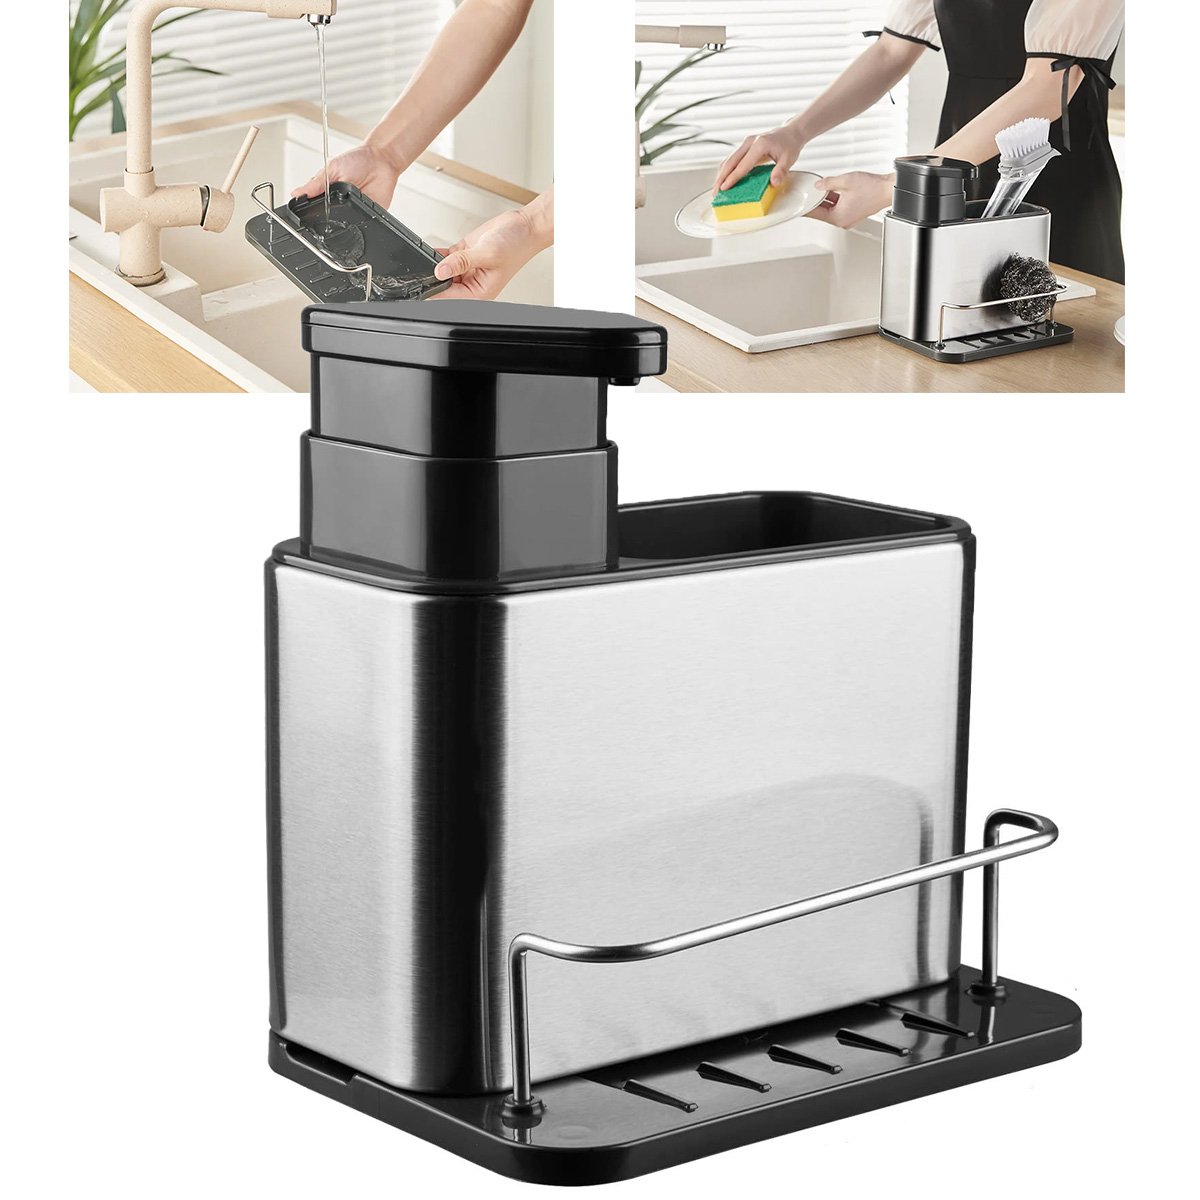 Dispenser Porta Detergente Escorredor Esponja 3 em 1 Inox Cozinha Pia Balcao Limpeza Higiene Escorre